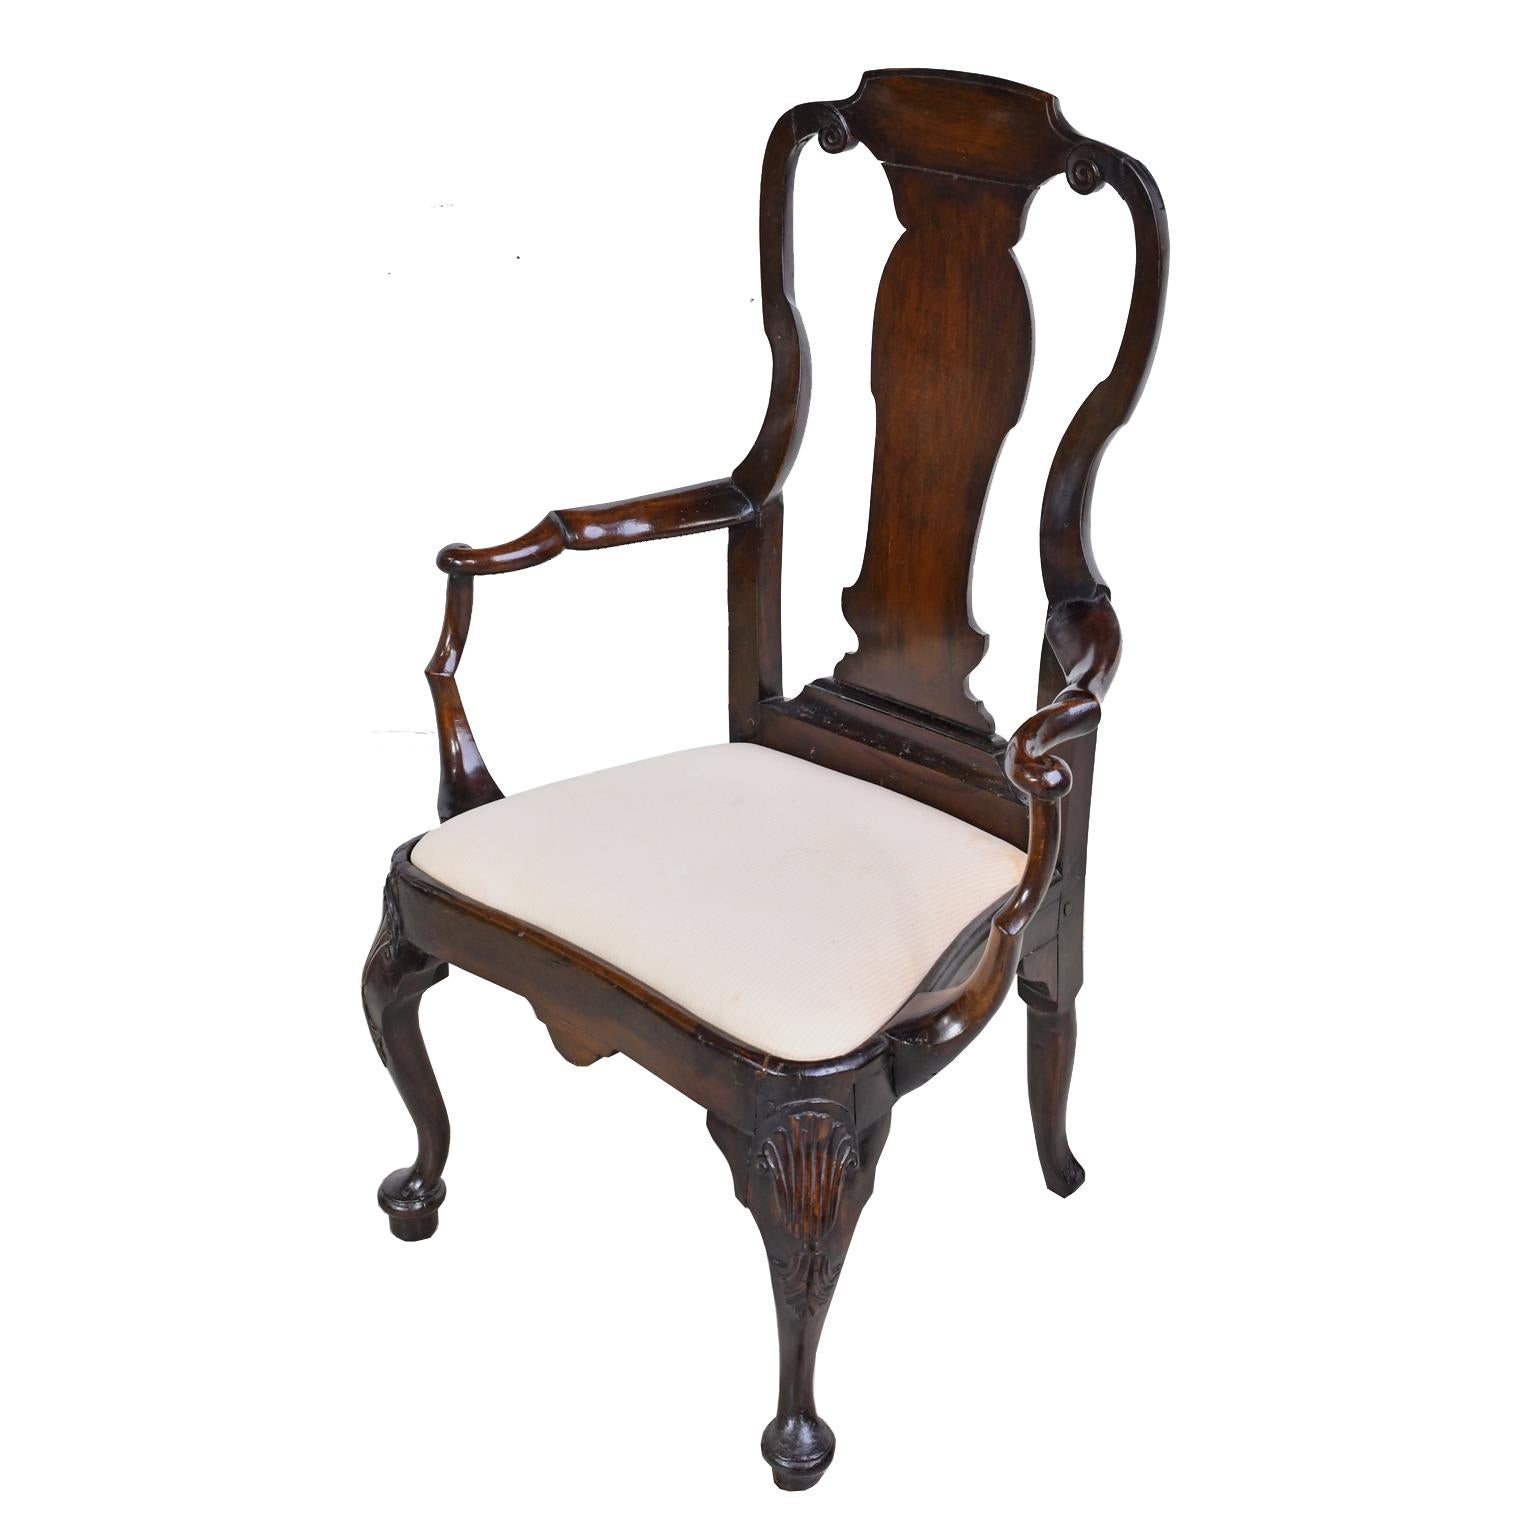 Très belle chaise hollandaise du XVIIIe siècle, datant de l'époque de Willem IV (né en 1711 et mort en 1751), prince d'Orange et de Nassau et gouverneur héréditaire des Pays-Bas unis. La structure de la chaise est en acajou avec un dossier en